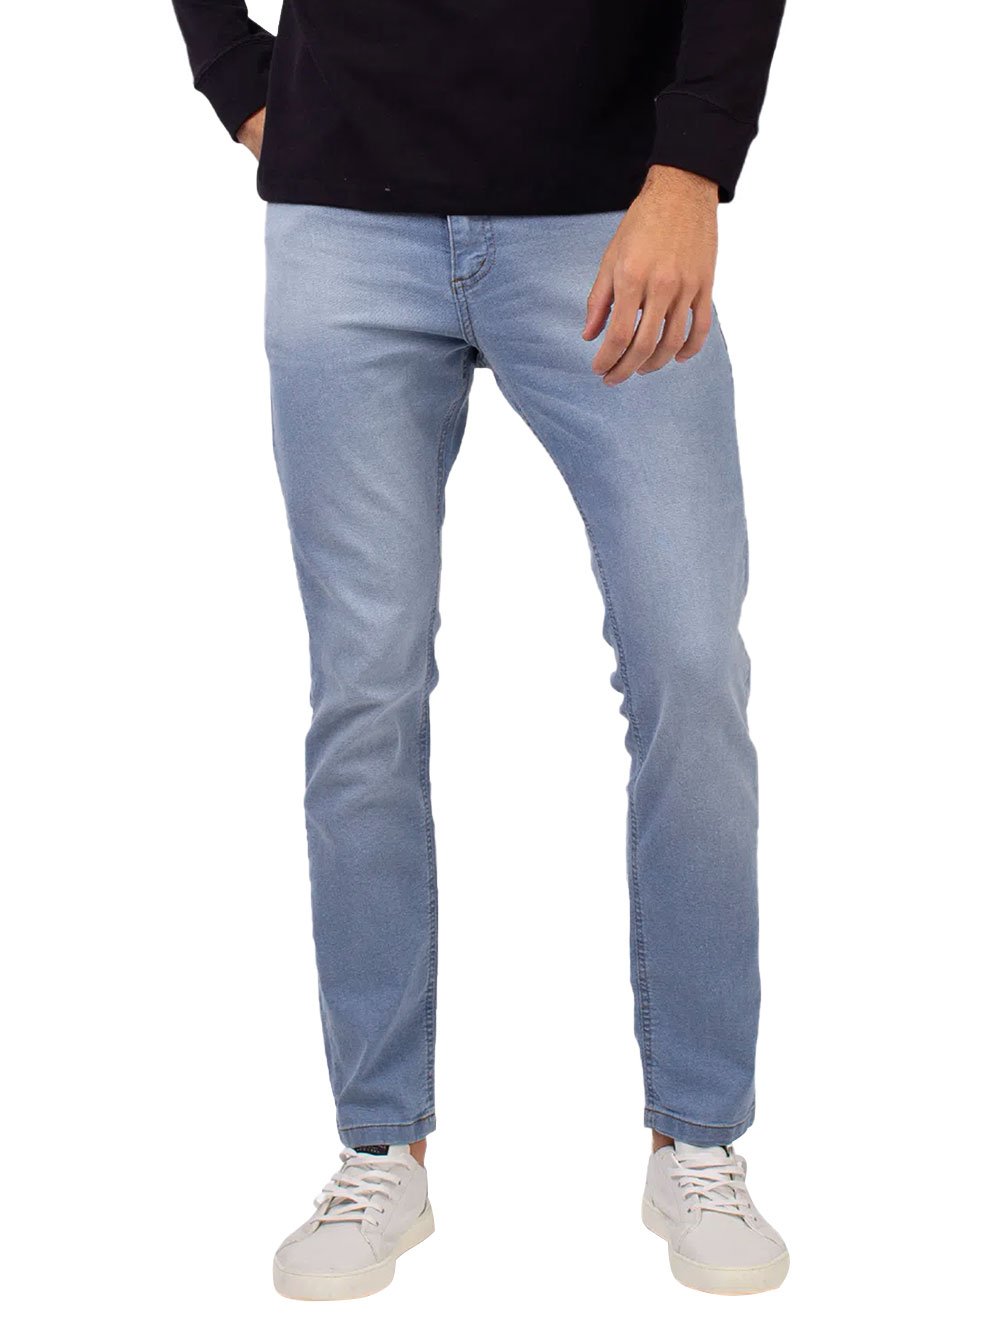 Calça Aeropostale Jeans Masculina Skinny Blue Clara